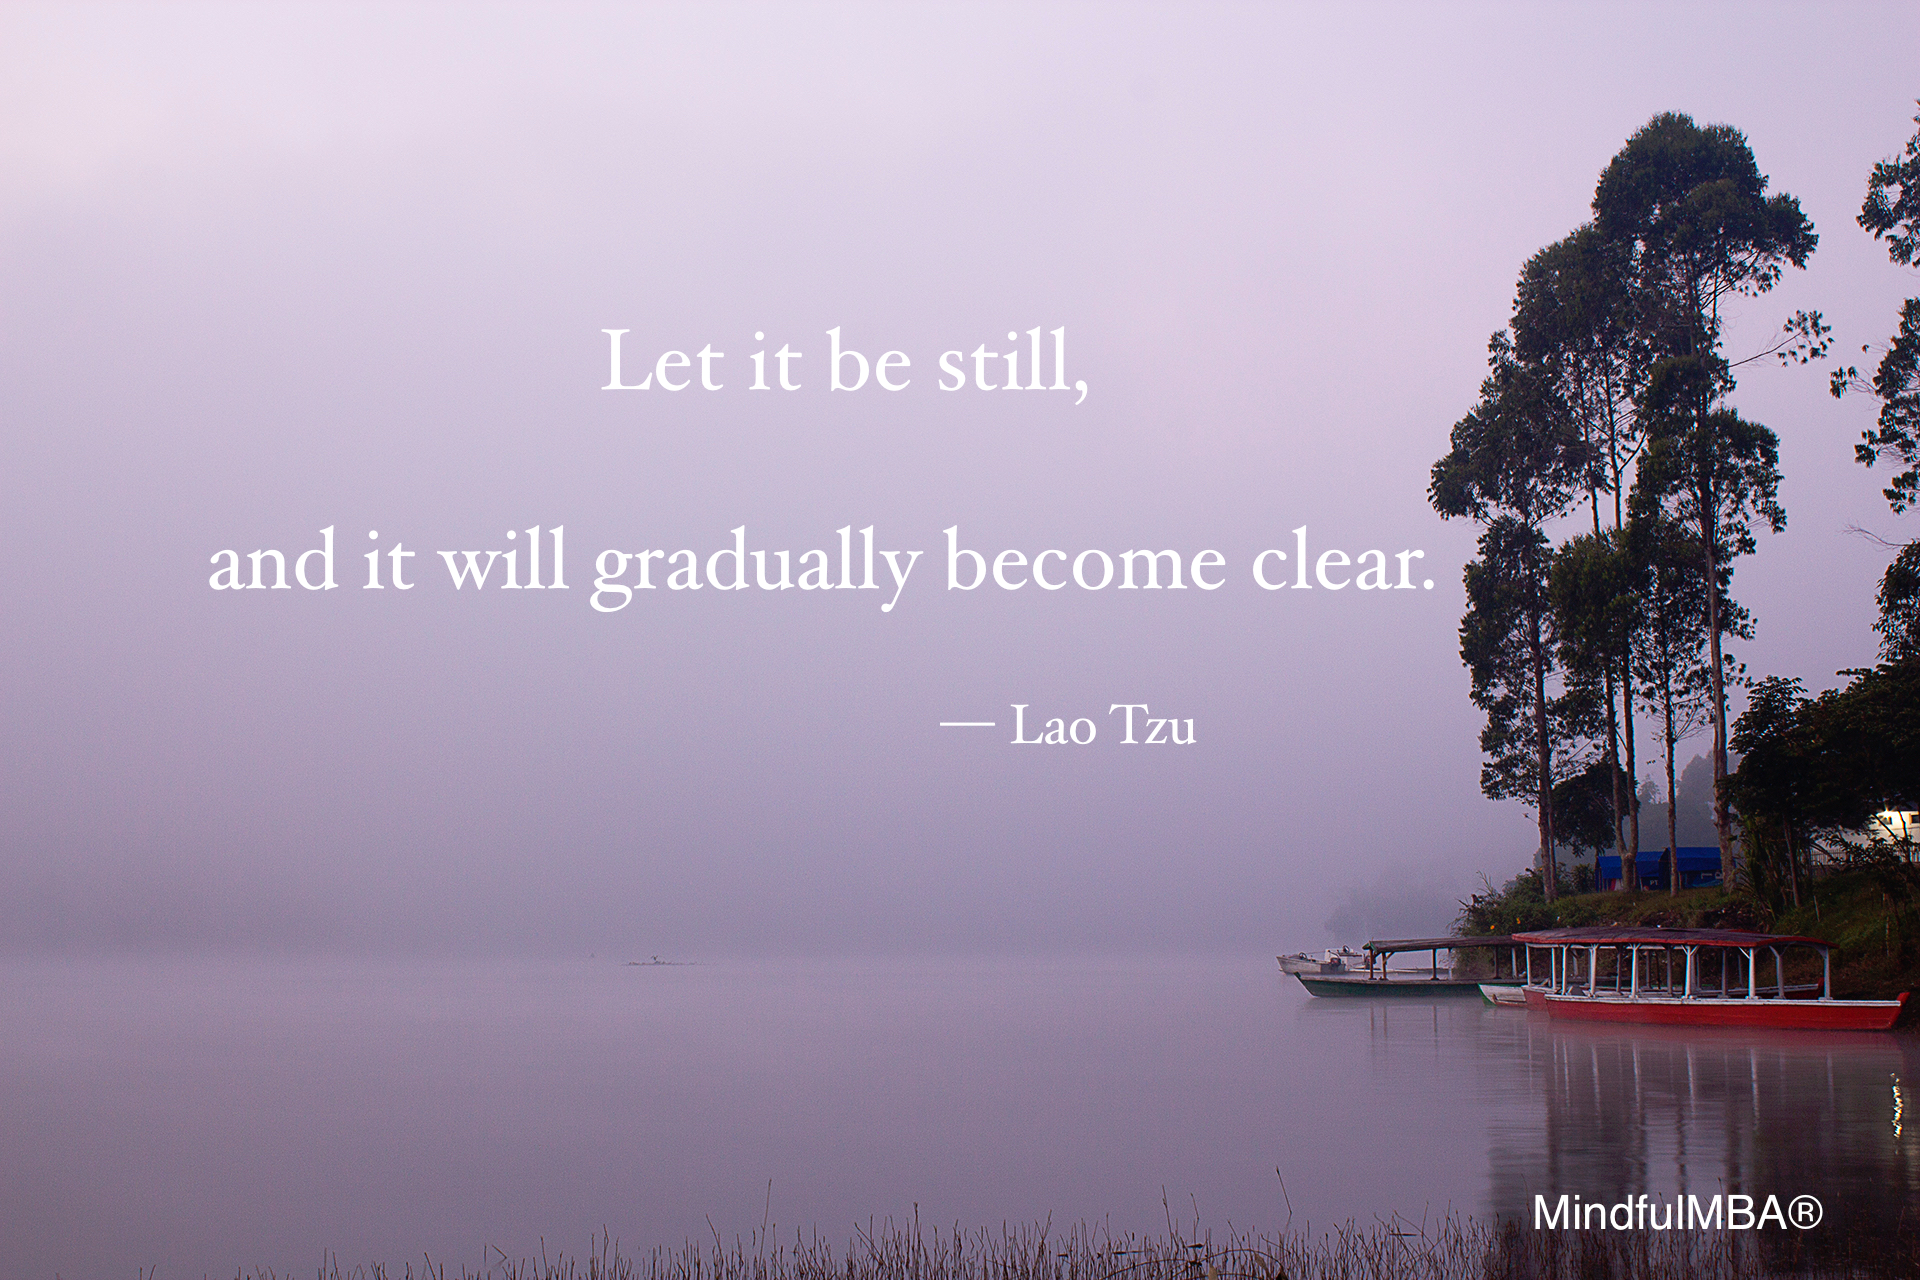 Lao Tzu still &amp; clear quote w tag